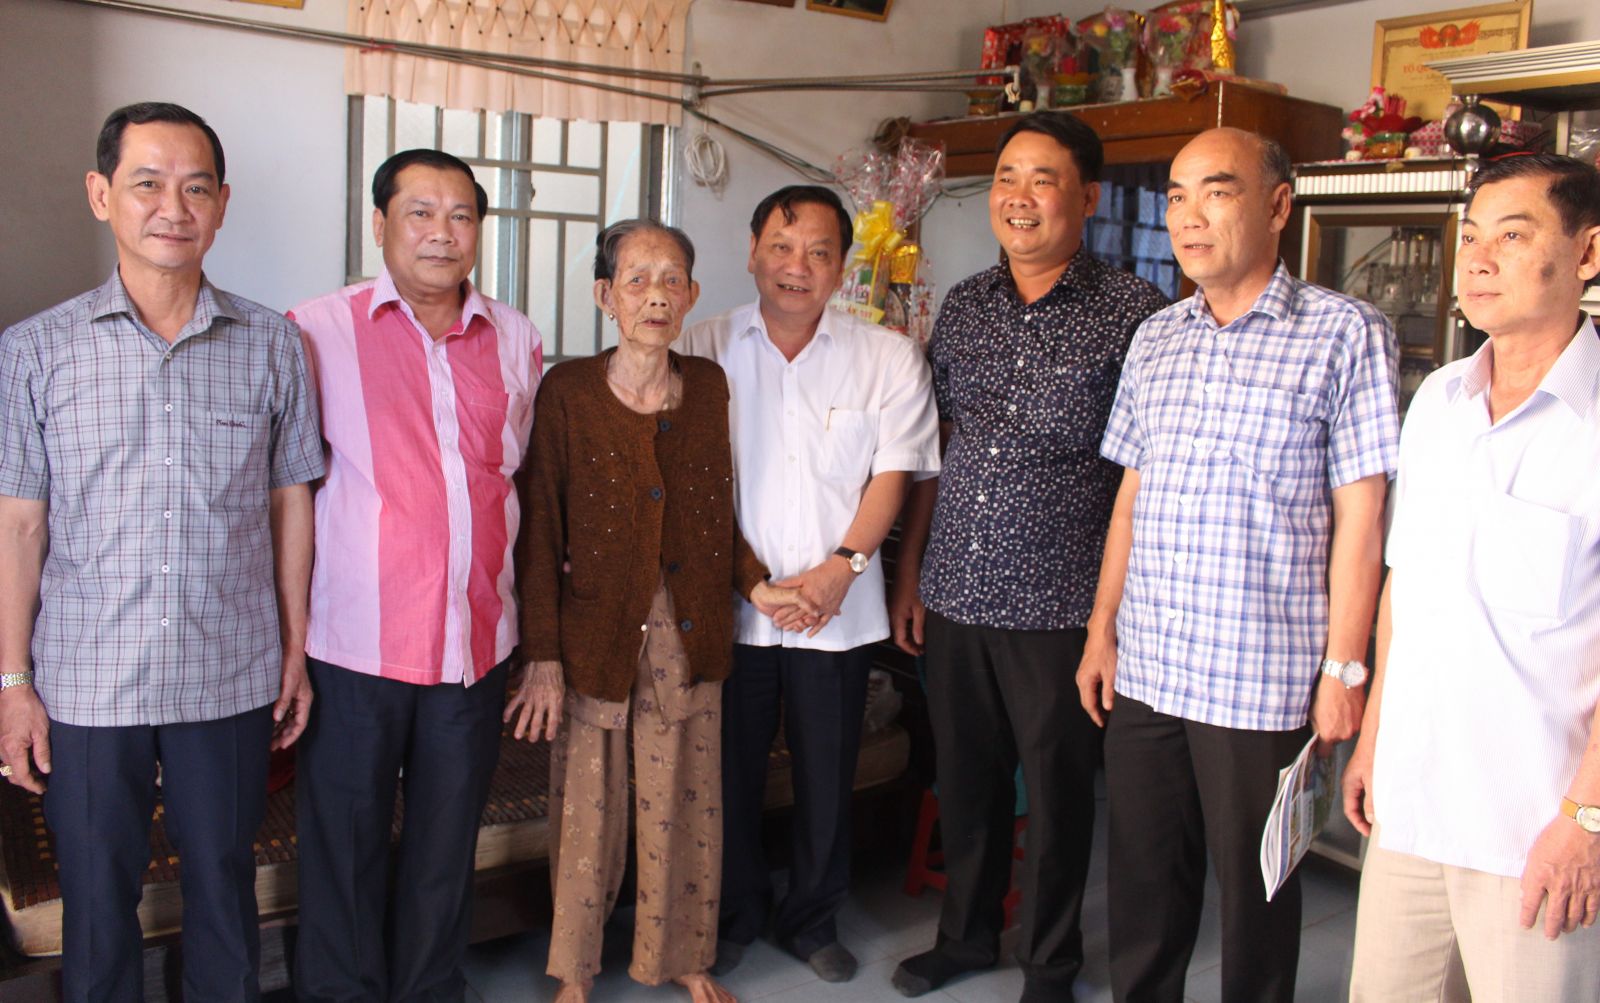 Đồng chí Trần Quốc Trung (đứng thứ 4, từ trái qua), Ủy viên Ban chấp hành Trung ương Đảng, Bí thư Thành ủy Cần Thơ cùng với các đồng chí trong đoàn đến chúc Tết gia đình bà Phan Thị Sửu, thị trấn Búng Tàu.